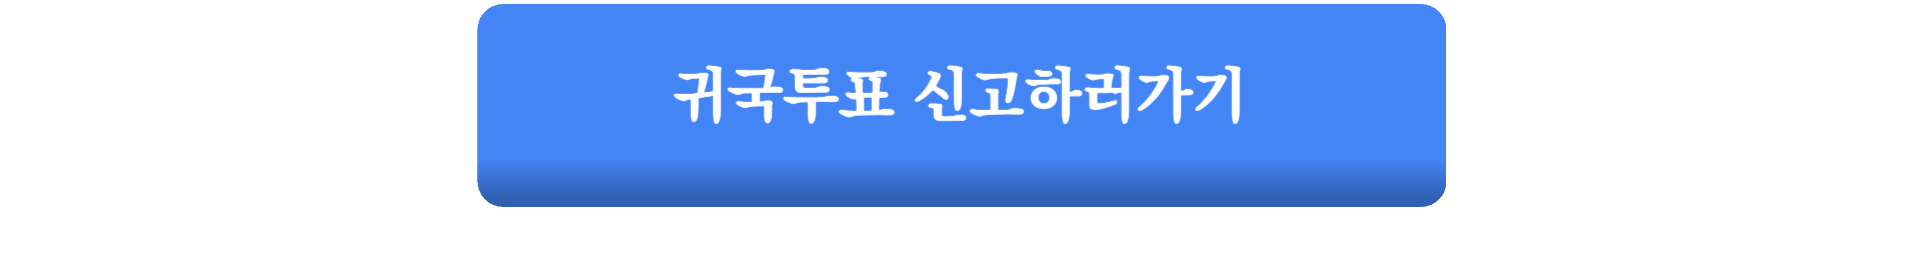 제22대 국회의원선거 국외부재자 신고 일정